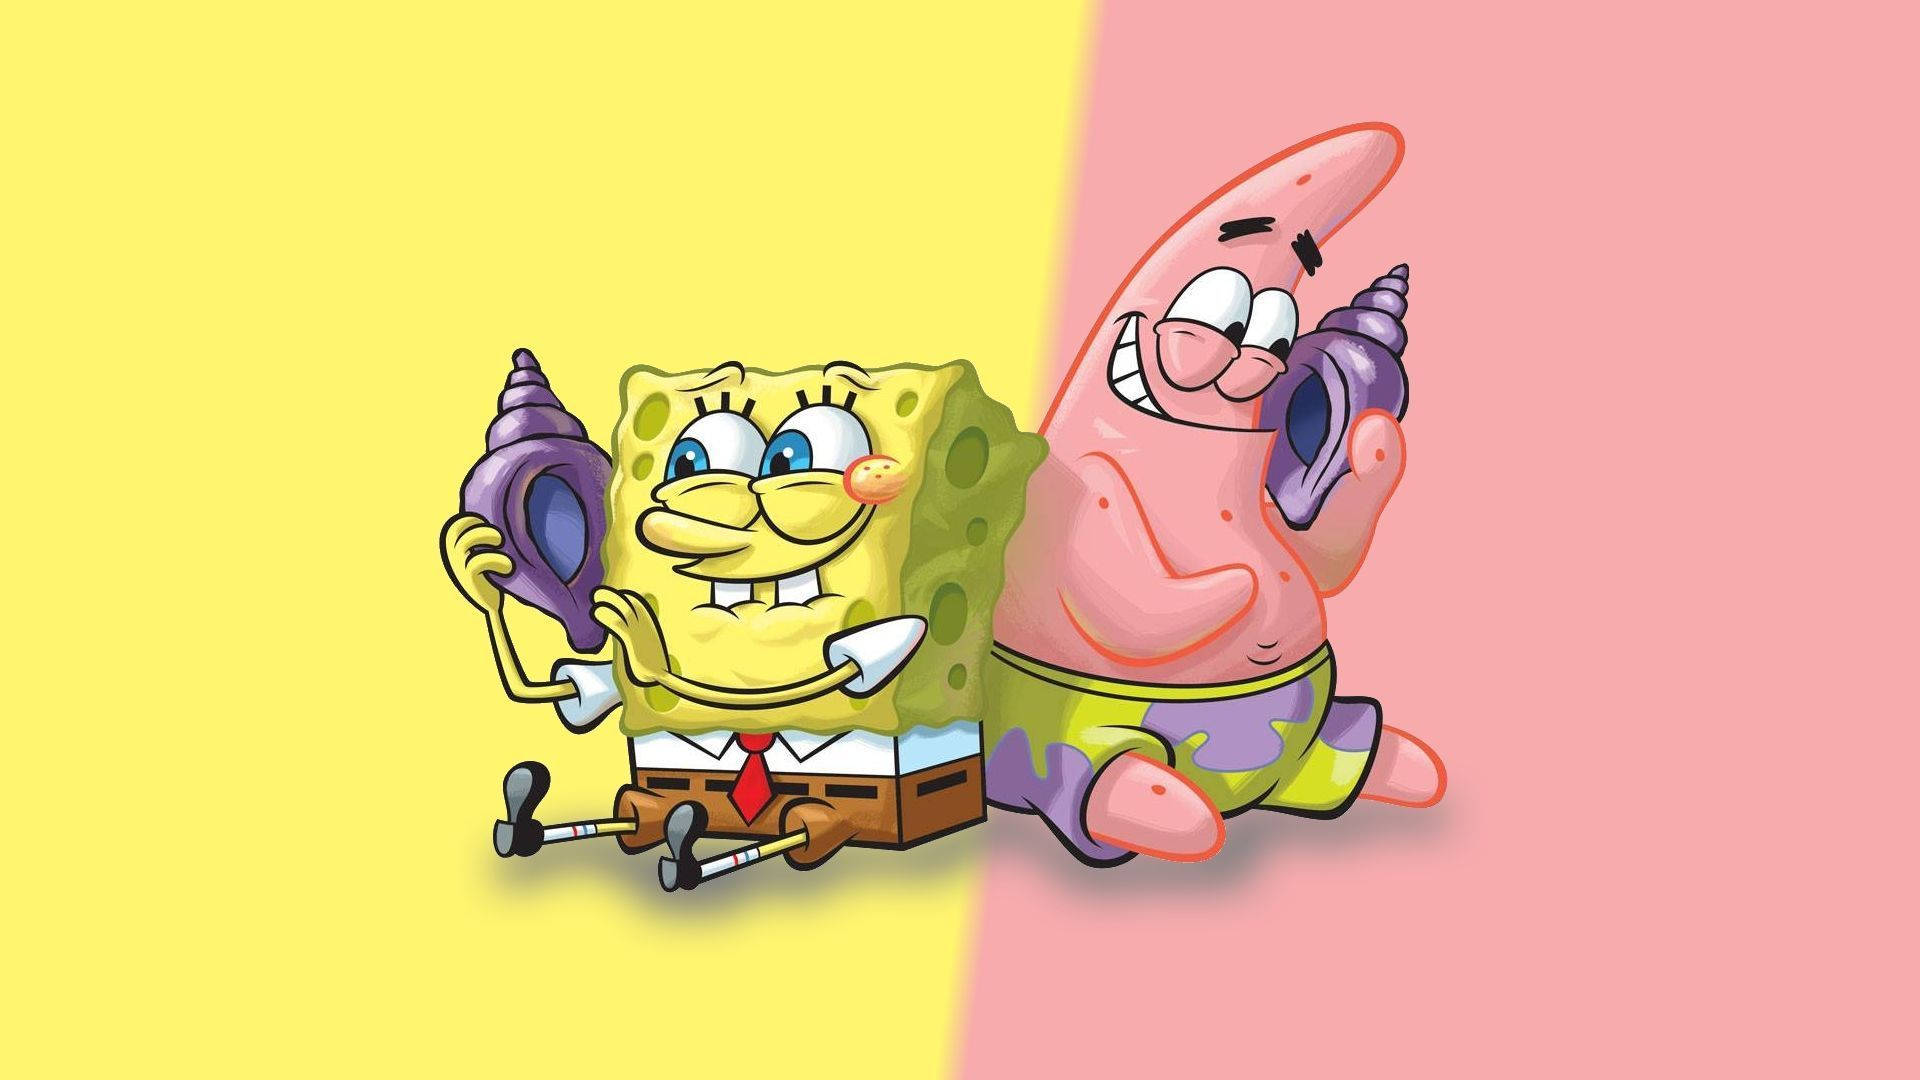 Bạn muốn tải hình nền cute Spongebob và Patrick trên điện thoại shellphone? Hãy xem hình ảnh này và cùng tận hưởng những khoảnh khắc tuyệt vời với hai nhân vật yêu thích của bạn. Hình nền này sẽ giúp bạn thư giãn và tạo nên một không gian độc đáo trên điện thoại của bạn.